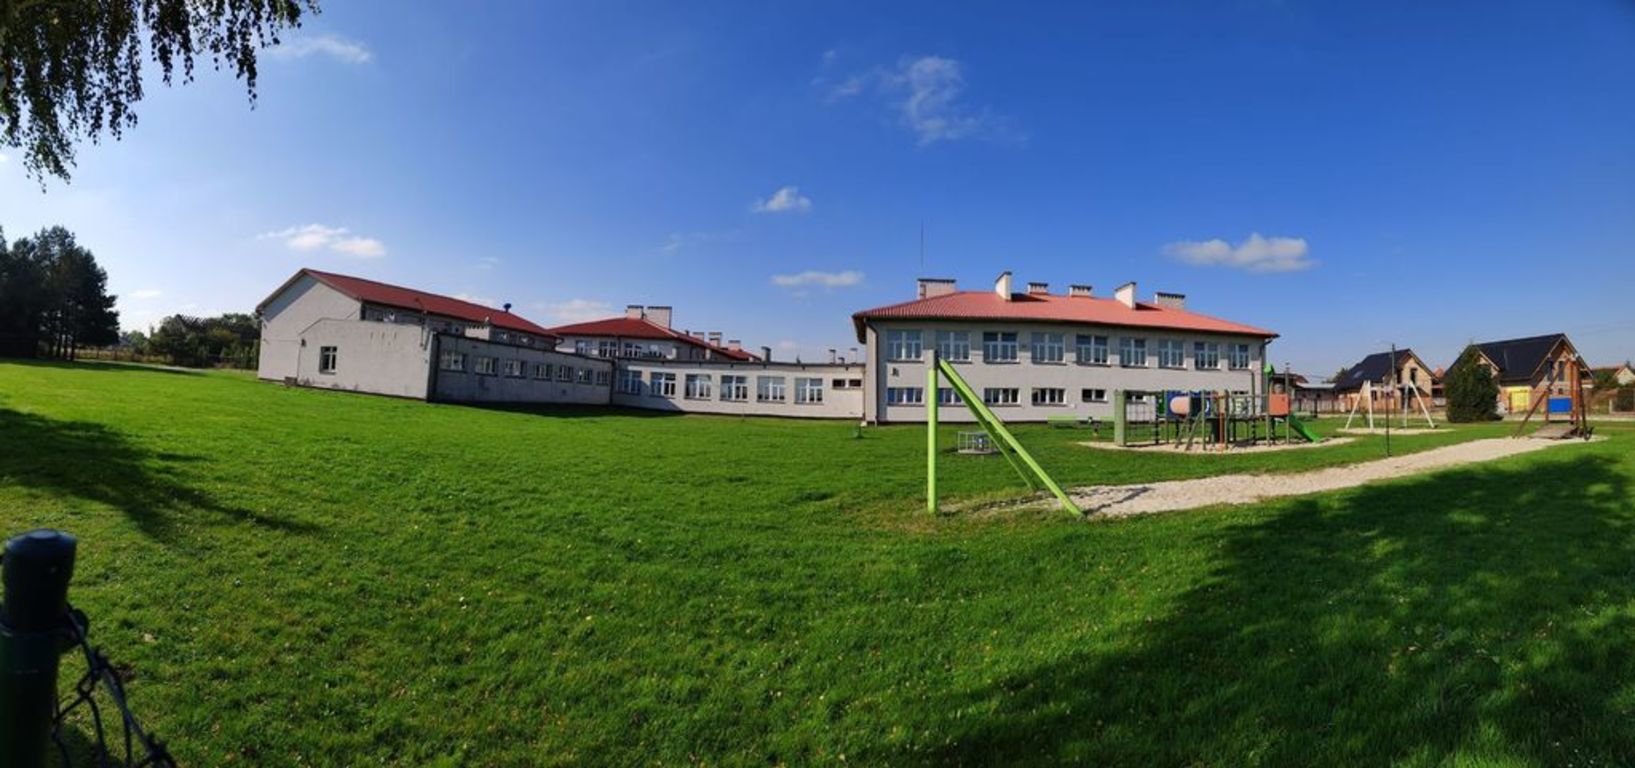 Gmina Domaniów pozyskała kolejne dofinansowanie w kwocie 6 794 684,63 zł ze środków UE na zadanie termomodernizacji budynków szkolnych.